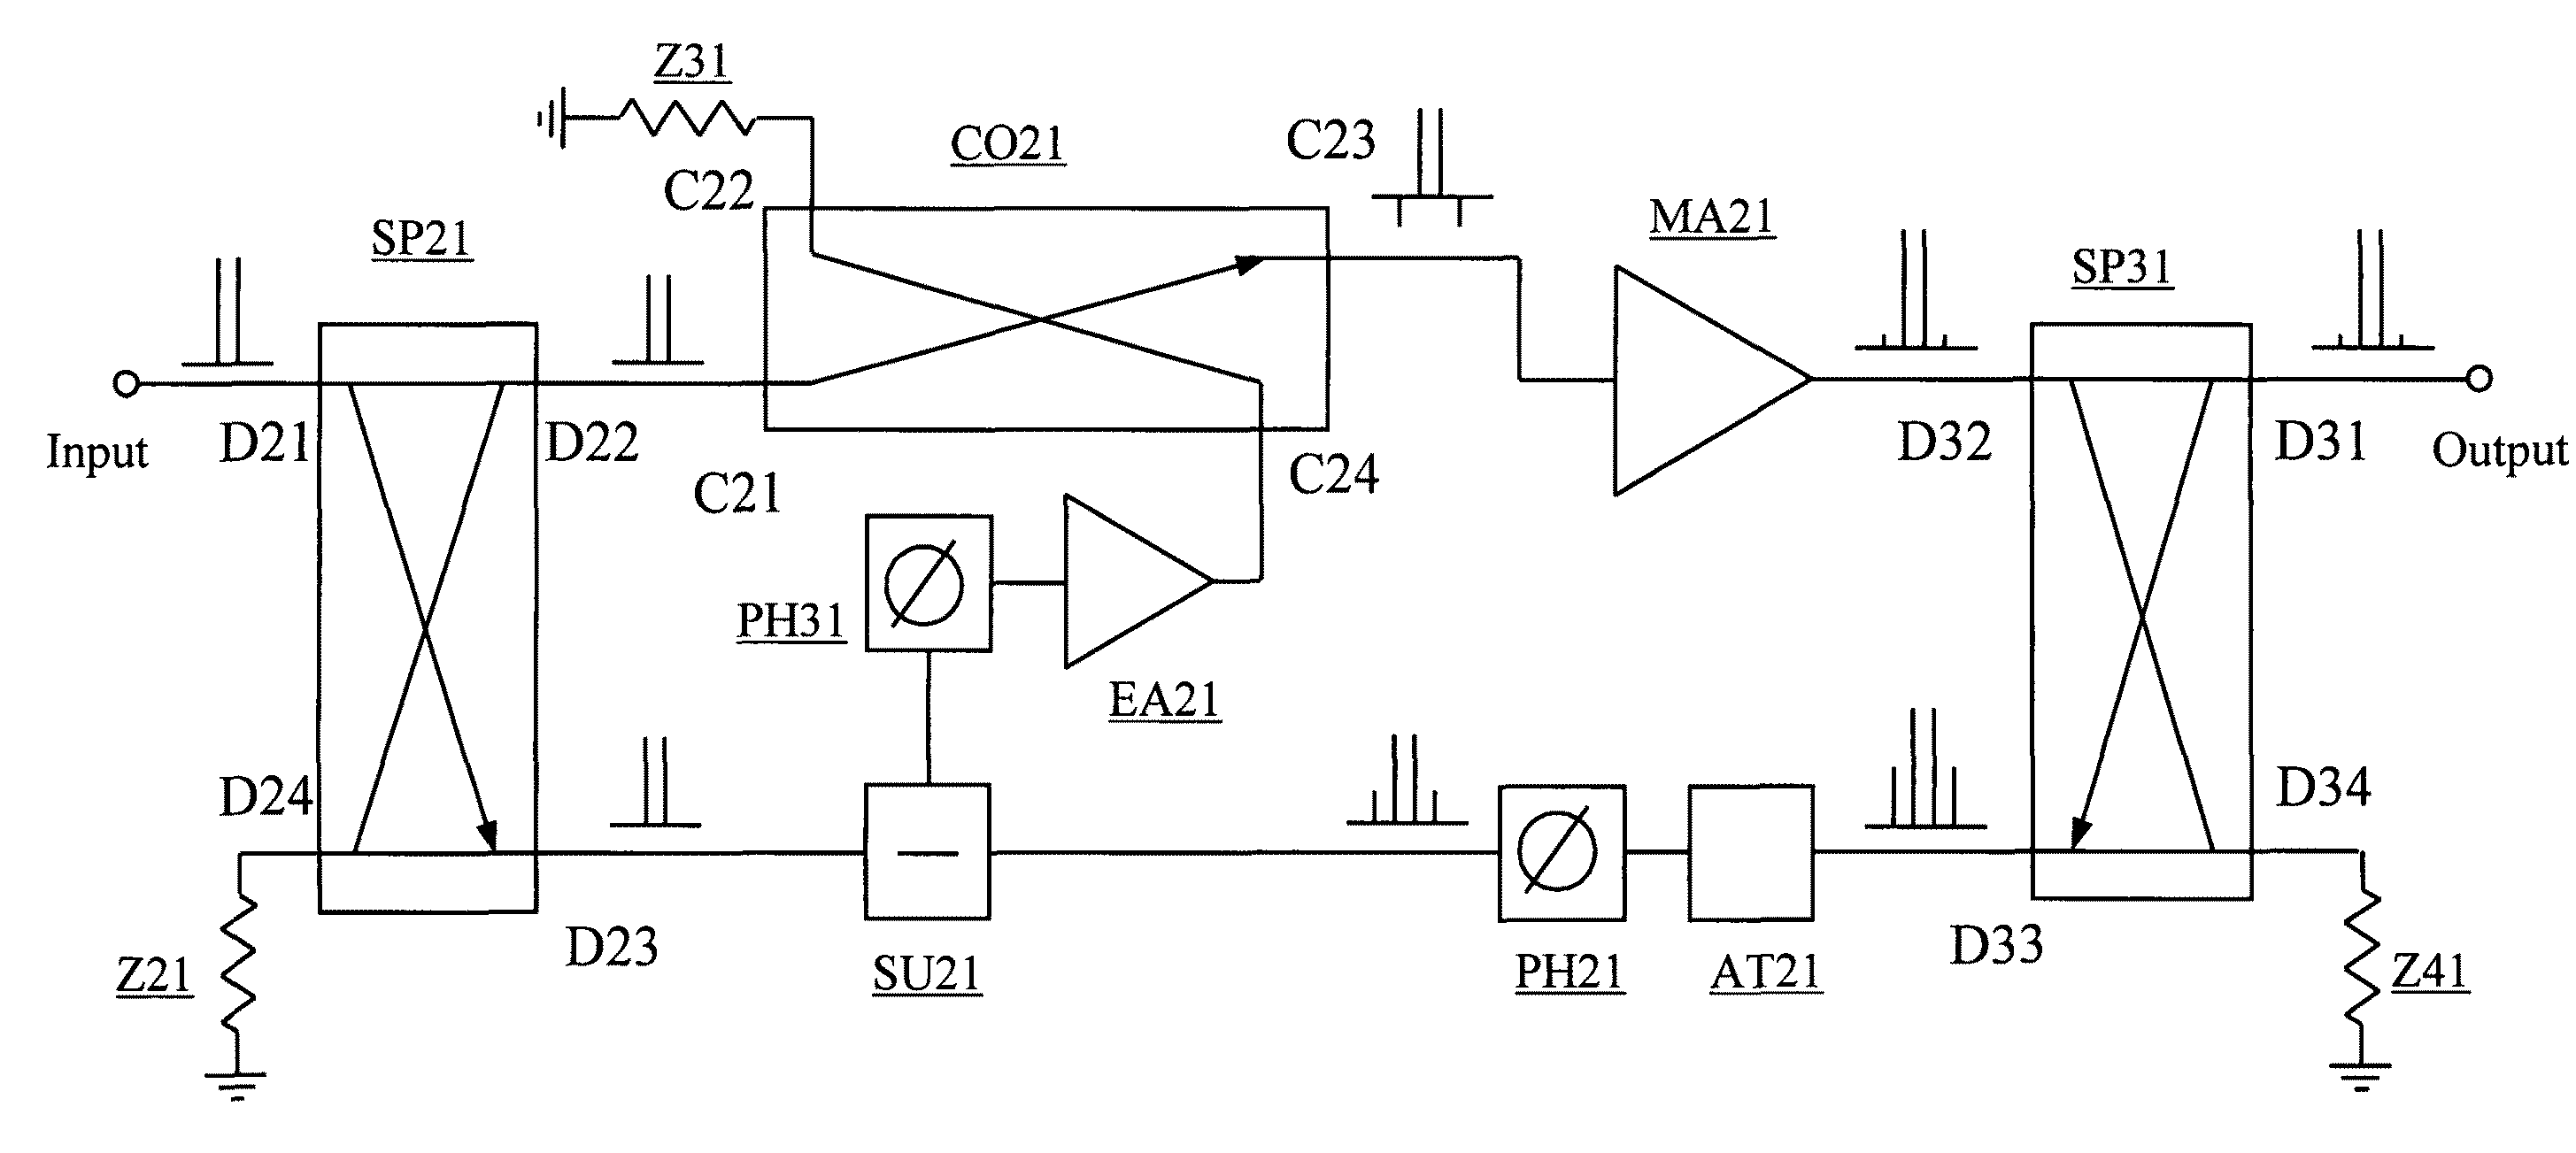 Power amplifier linearization using RF feedback